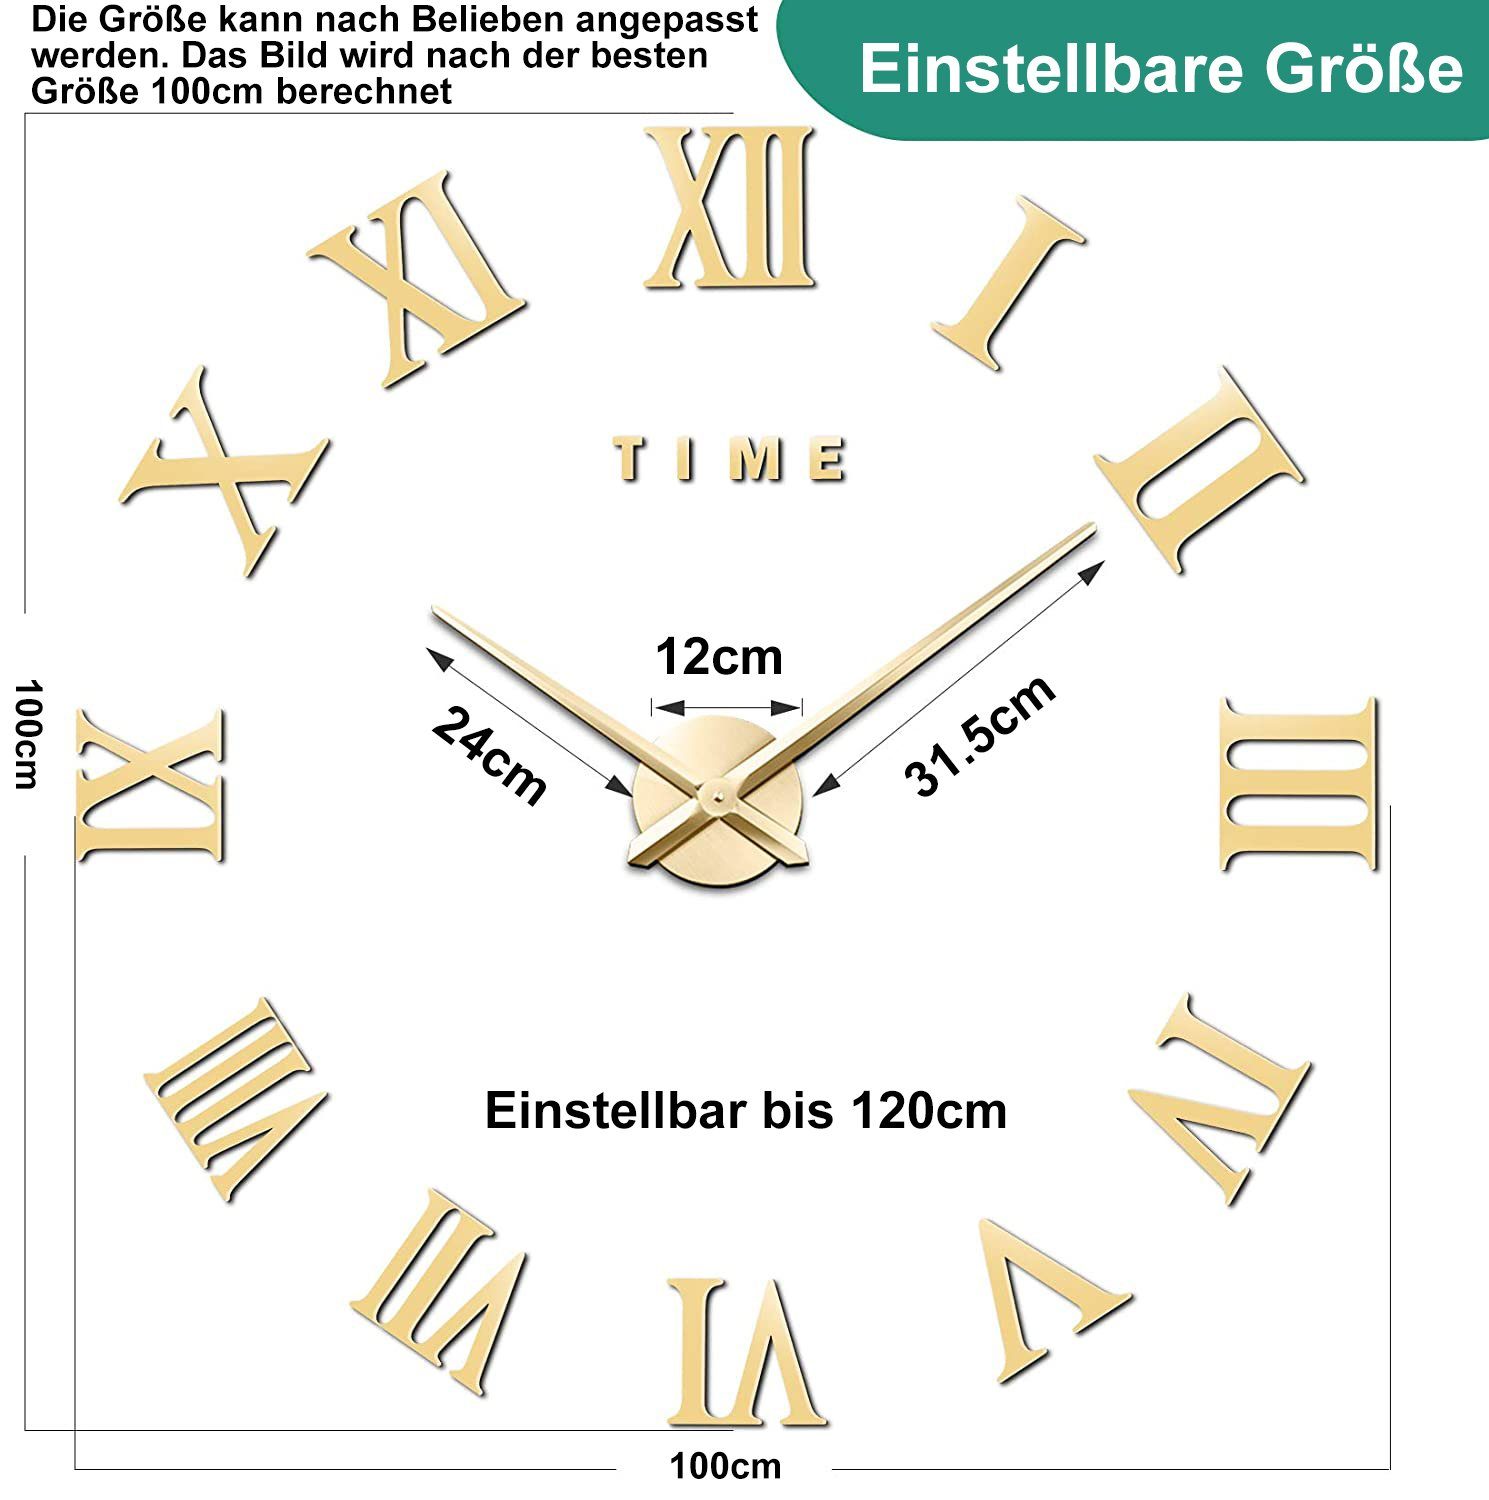 3D Vaxiuja Uhr Wanduhr, Ziffern Wanduhr riesige römische Große Dekoration DIY